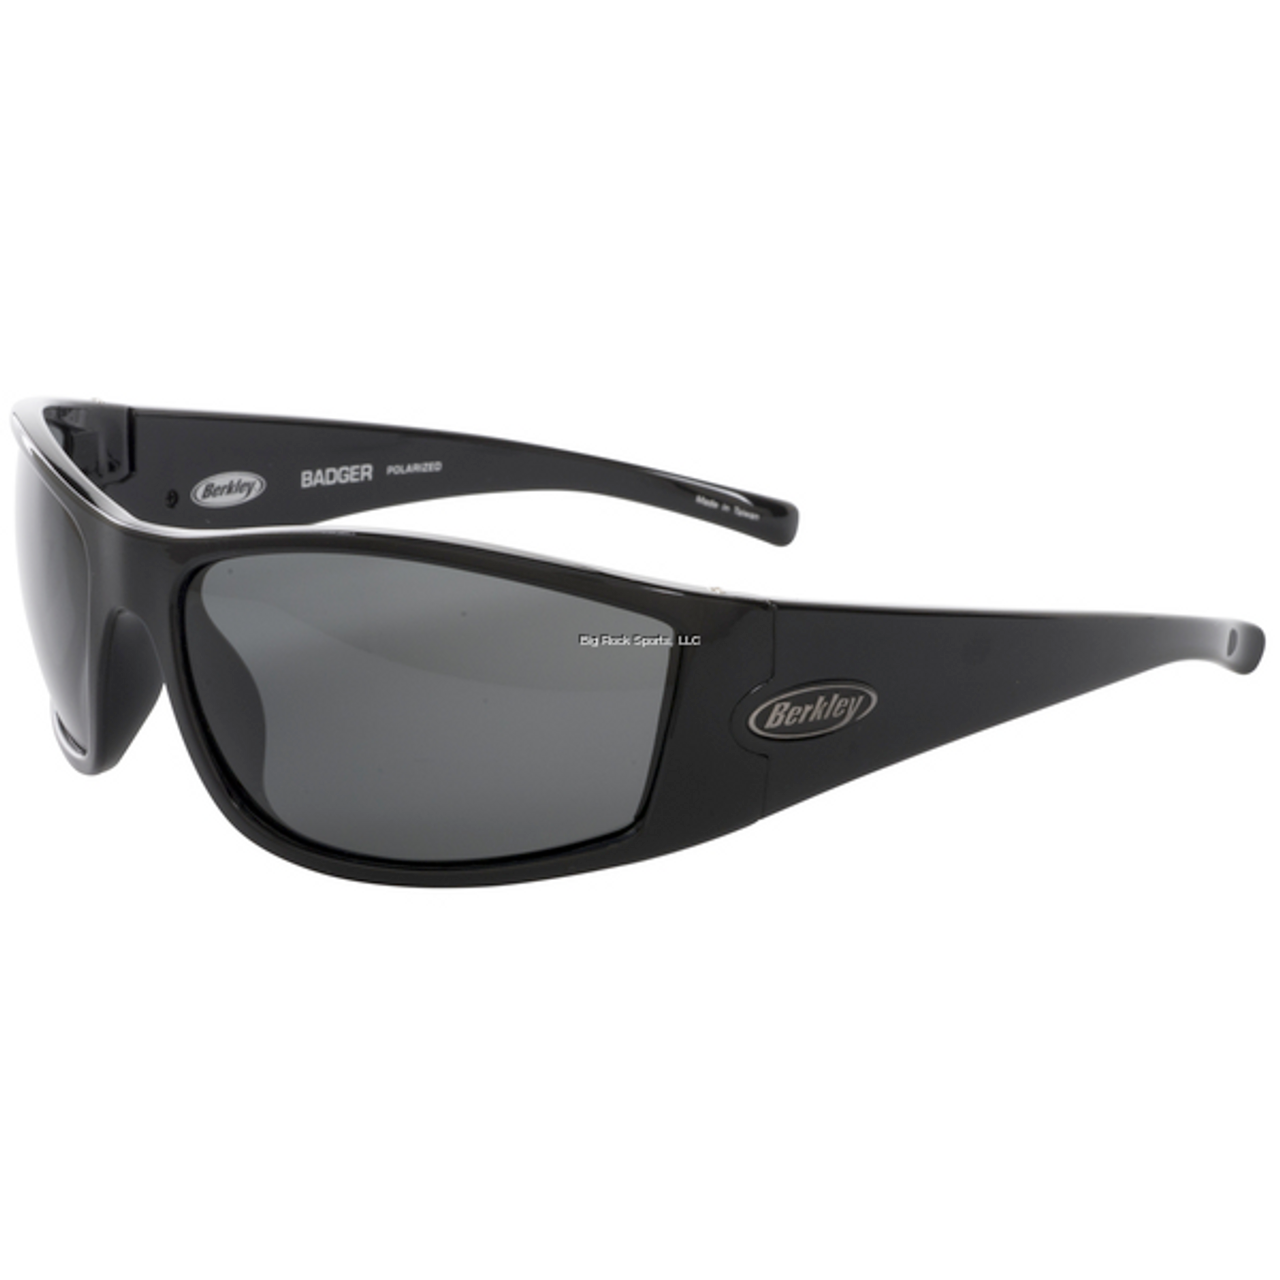 Berkley Badger Sunglasses, Gloss Black Frame/ Smoke Grey Lens